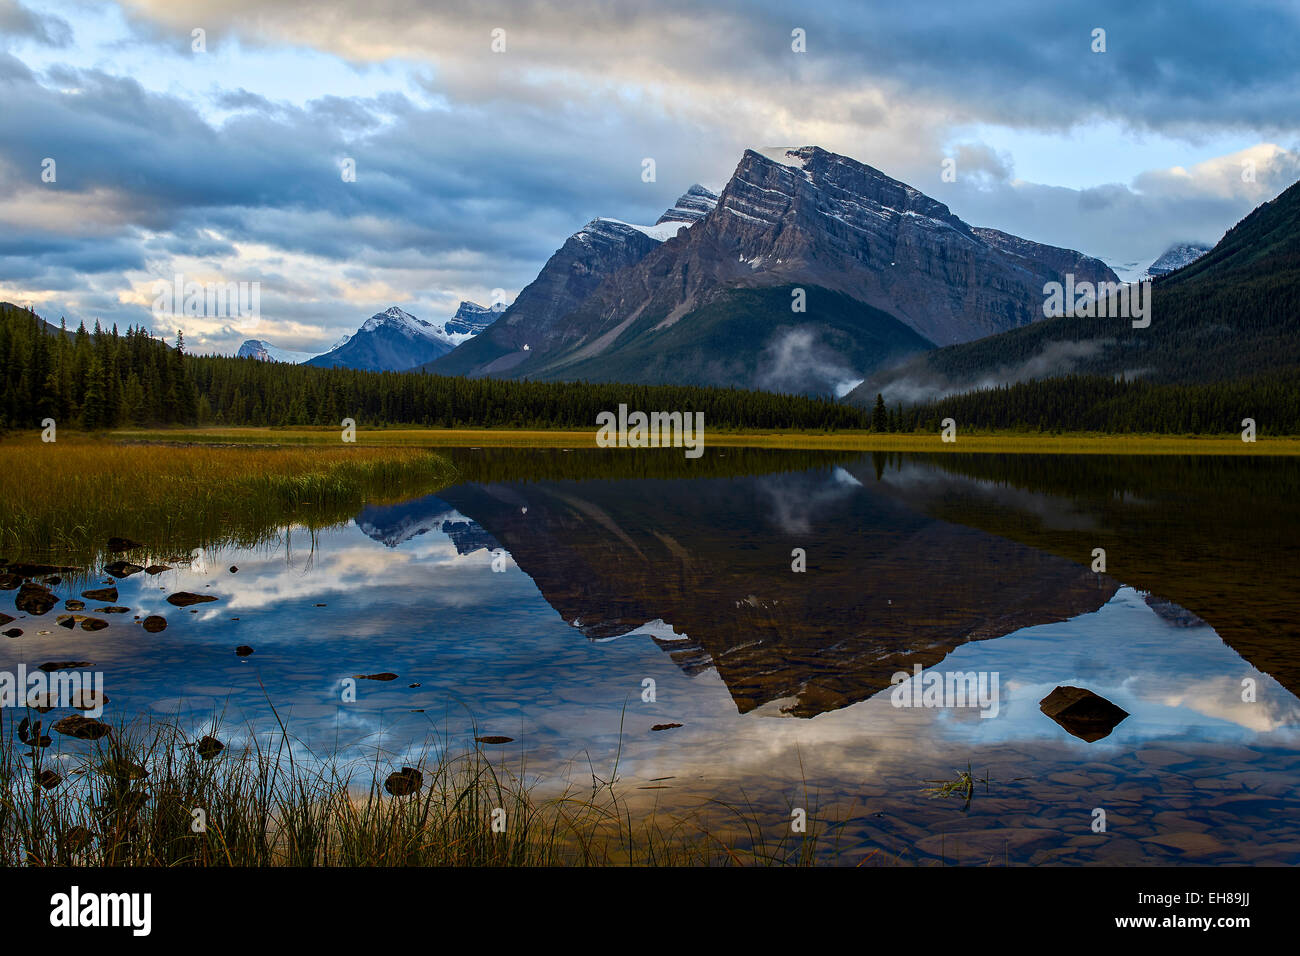 Le Lac de la sauvagine dans la montagne au lever du soleil, le parc national Banff, l'UNESCO, de l'Alberta, des montagnes Rocheuses, au Canada, en Amérique du Nord Banque D'Images